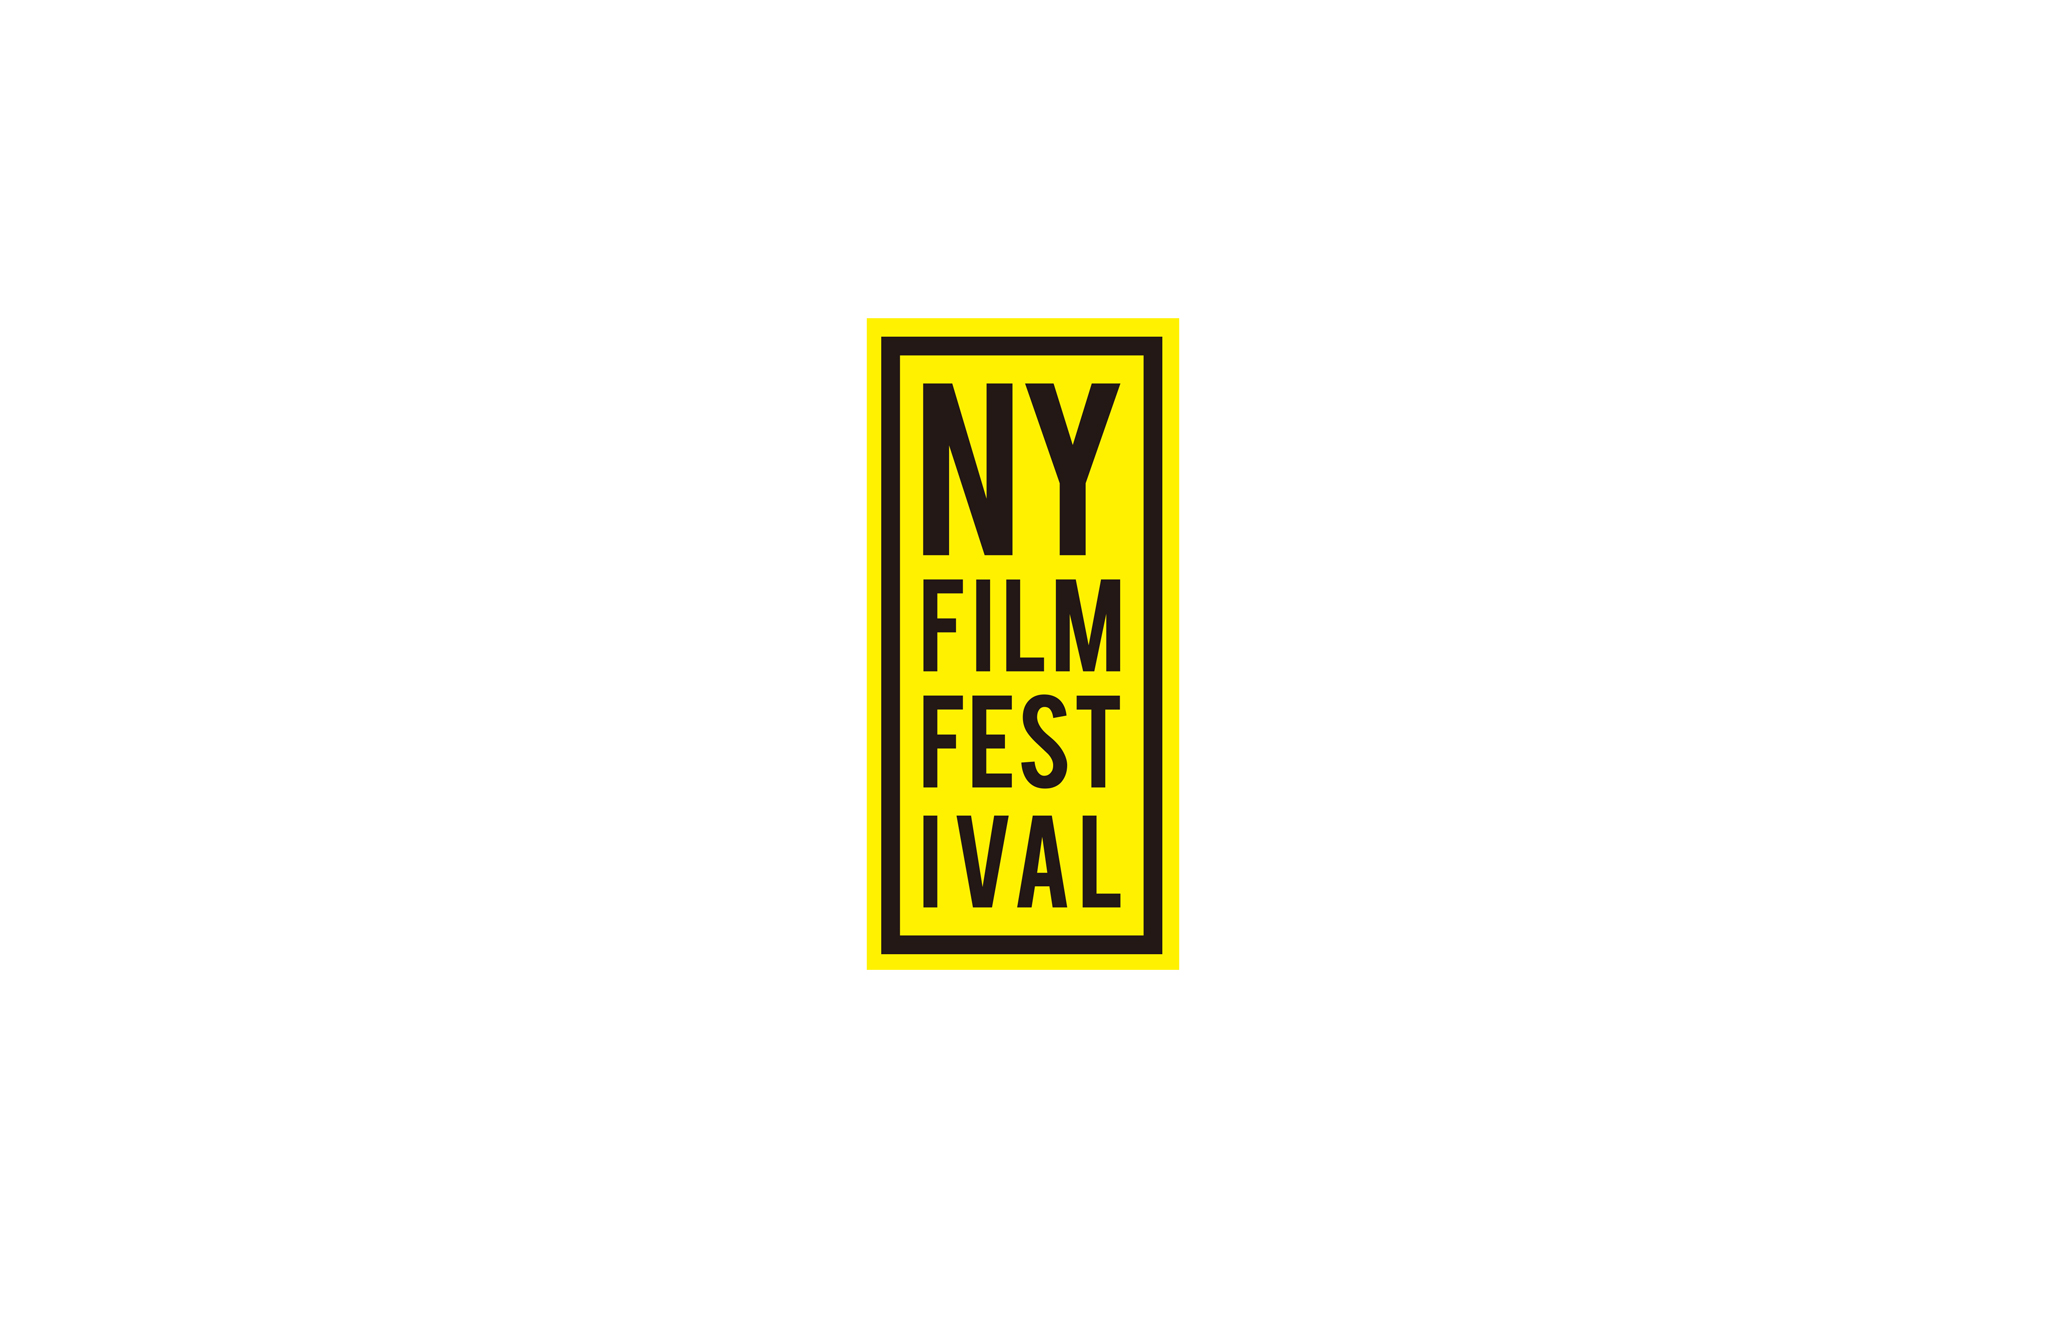 New York Film Festival by Dini Su SVA Design